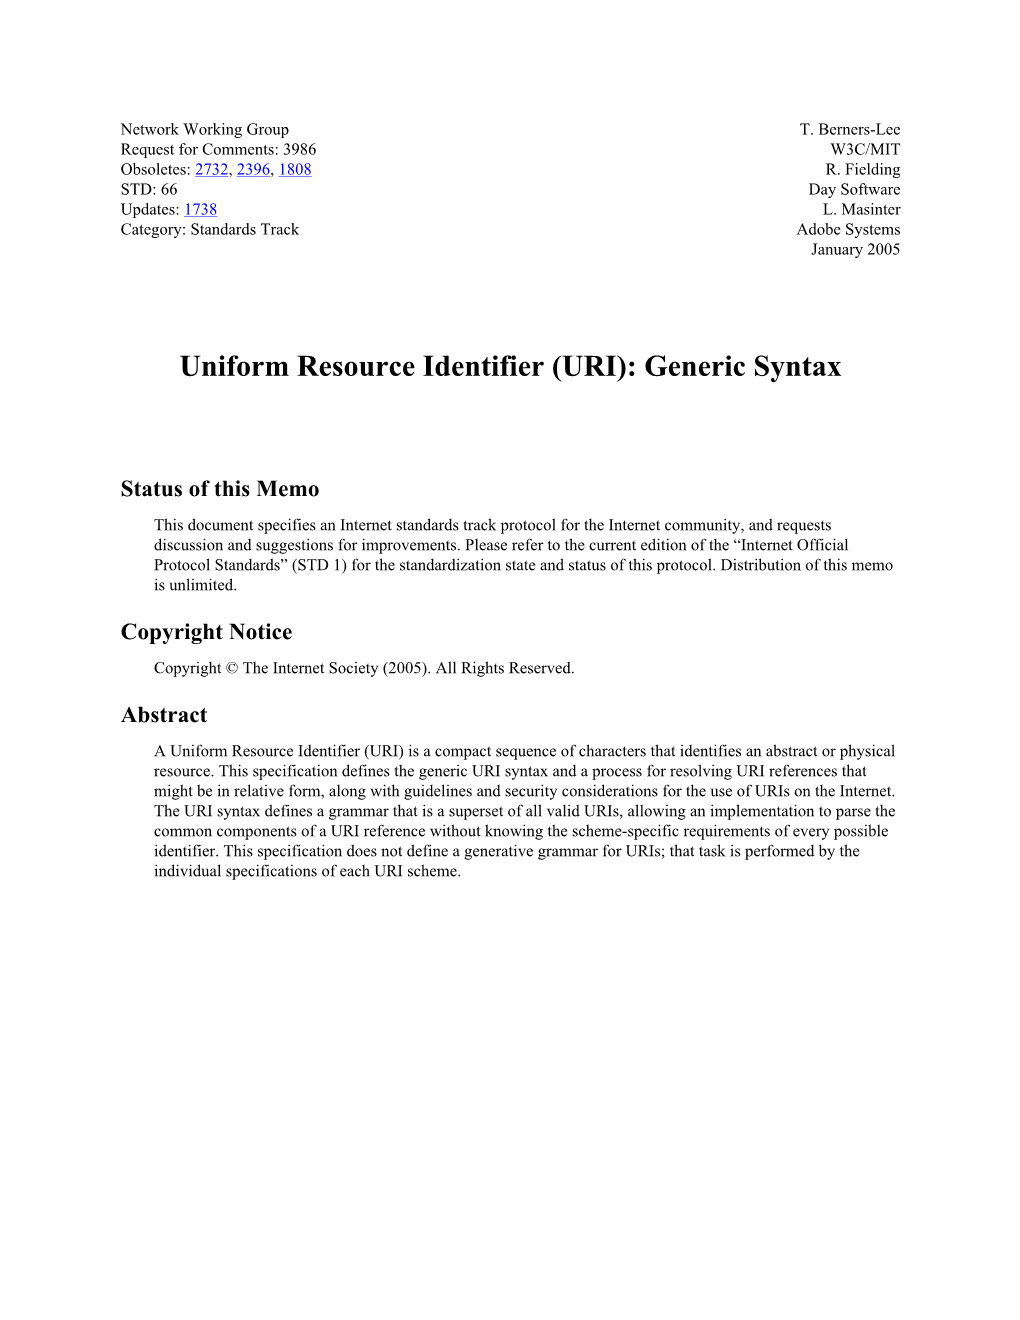 Uniform Resource Identifier (URI): Generic Syntax